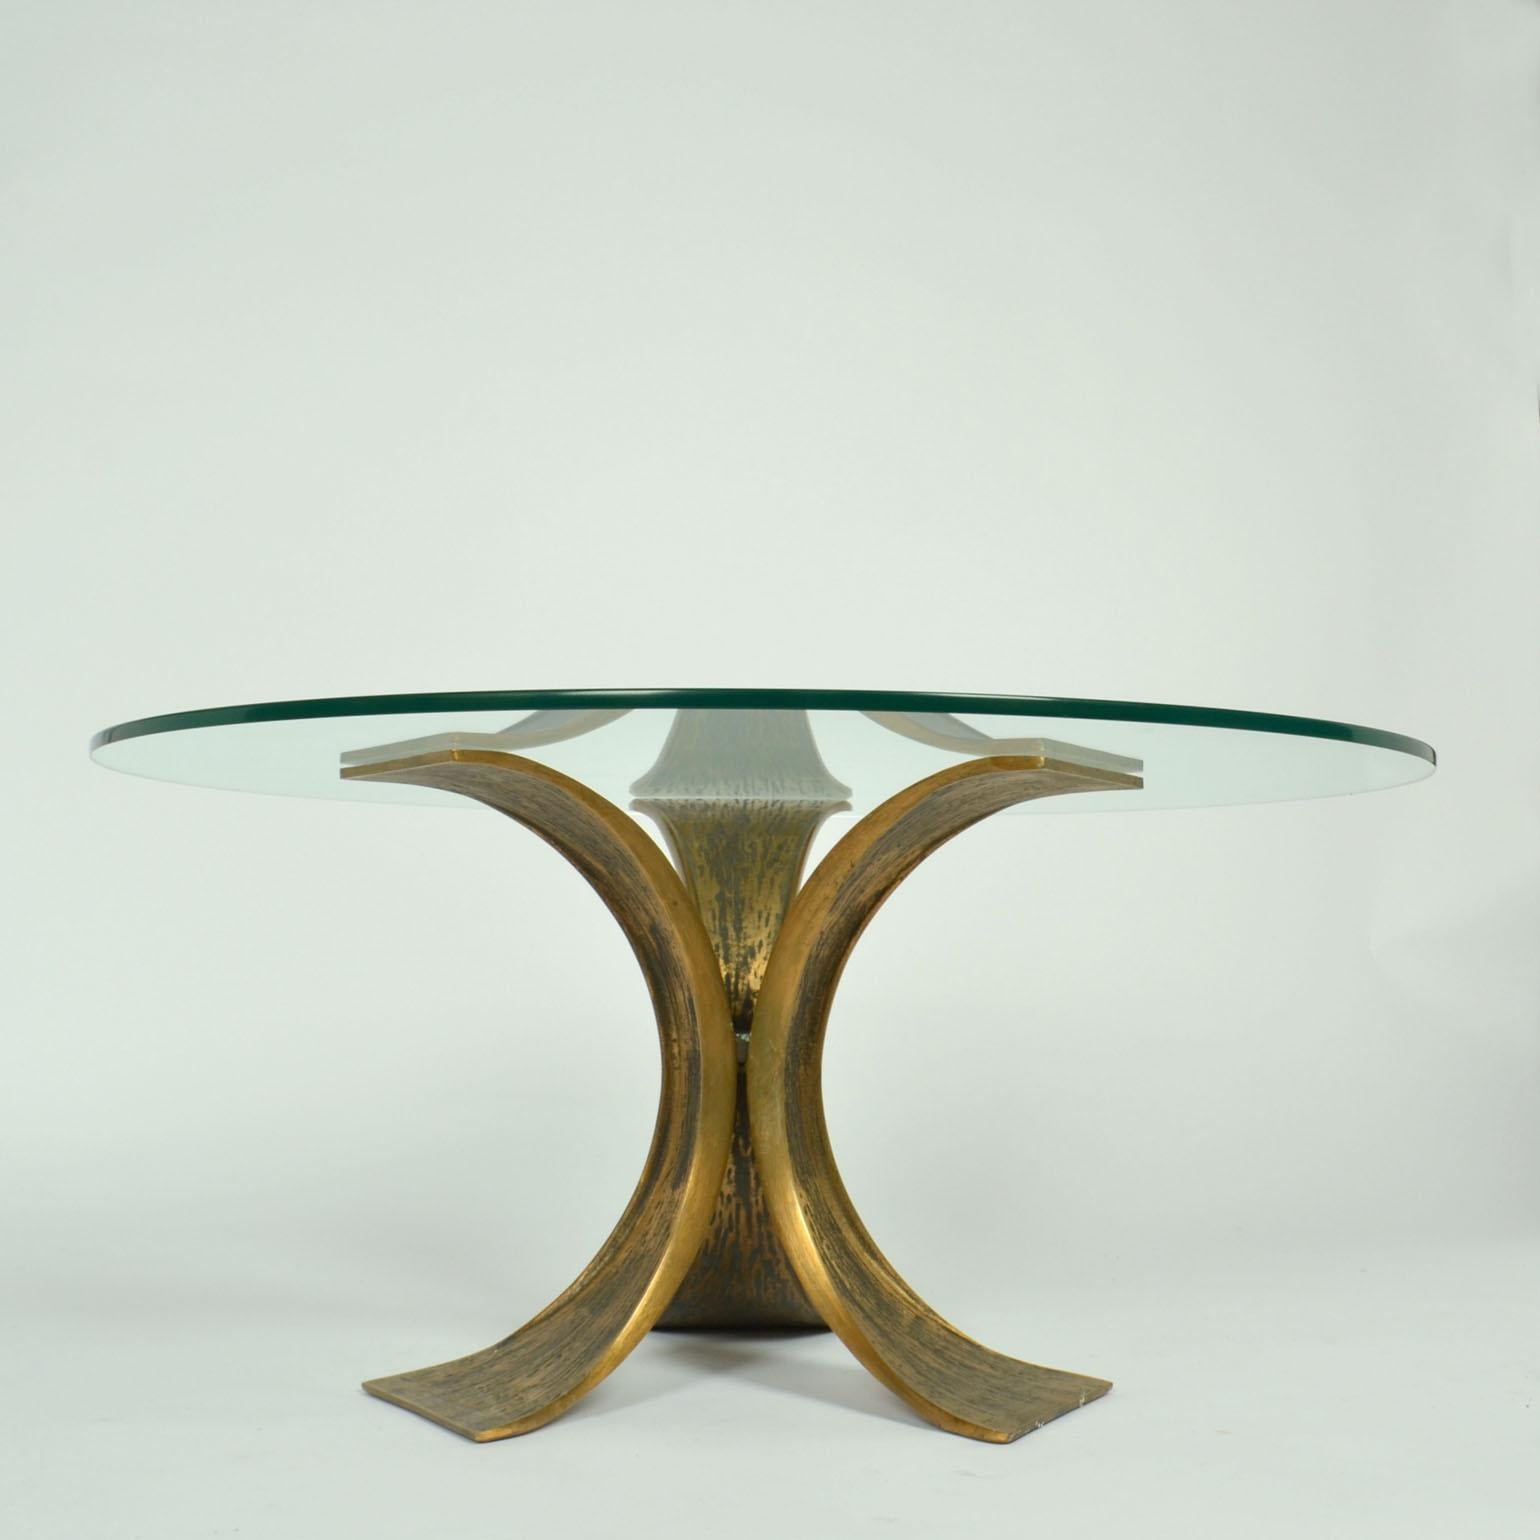 Skulpturaler runder Tisch aus geflügelter Bronze mit Glasplatte von Luciano Frigeriom, geboren in Desio im Jahr 1928.
Der Tischfuß besteht aus drei schmetterlingsförmigen Armen aus Bronze, die in einem sechseckigen Zentrum miteinander verbunden